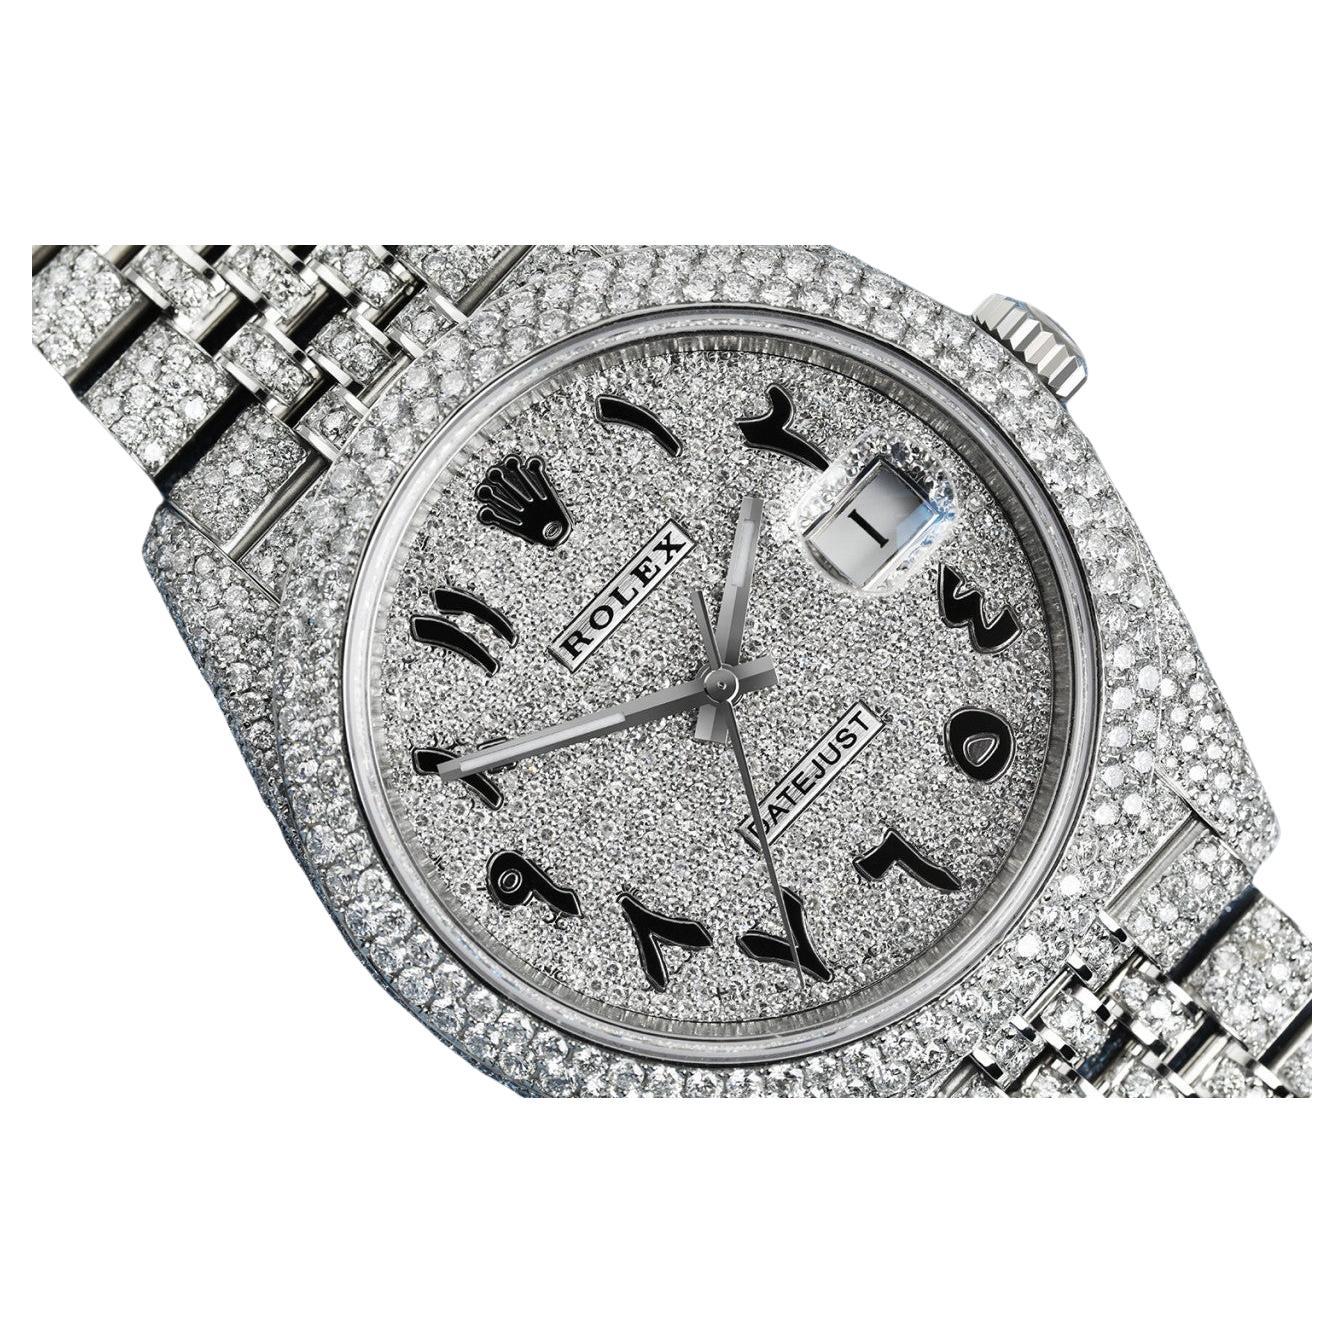 Rolex Montre Datejust 41 en acier inoxydable et diamants avec chiffres arabes écaillés sur mesure